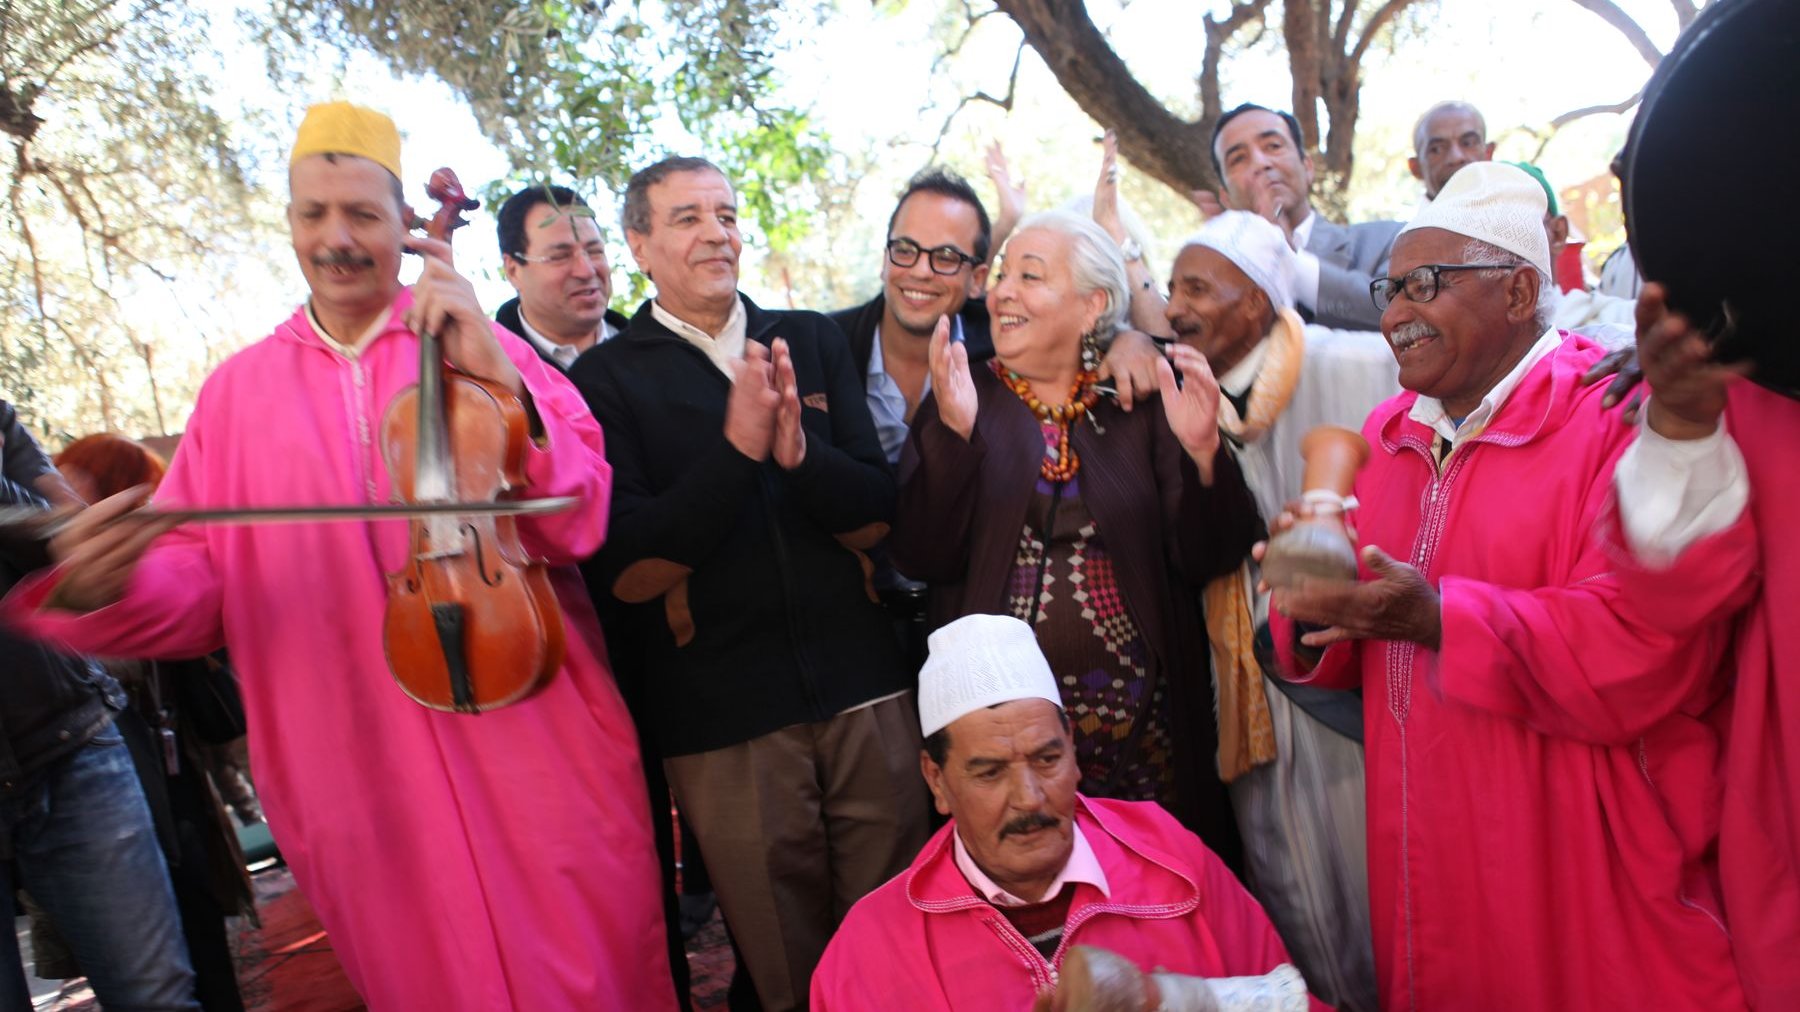 La fête a battu son plein lors de cet hommage où ont été donnés plusieurs concerts de musique traditionnelle marocaine. 
